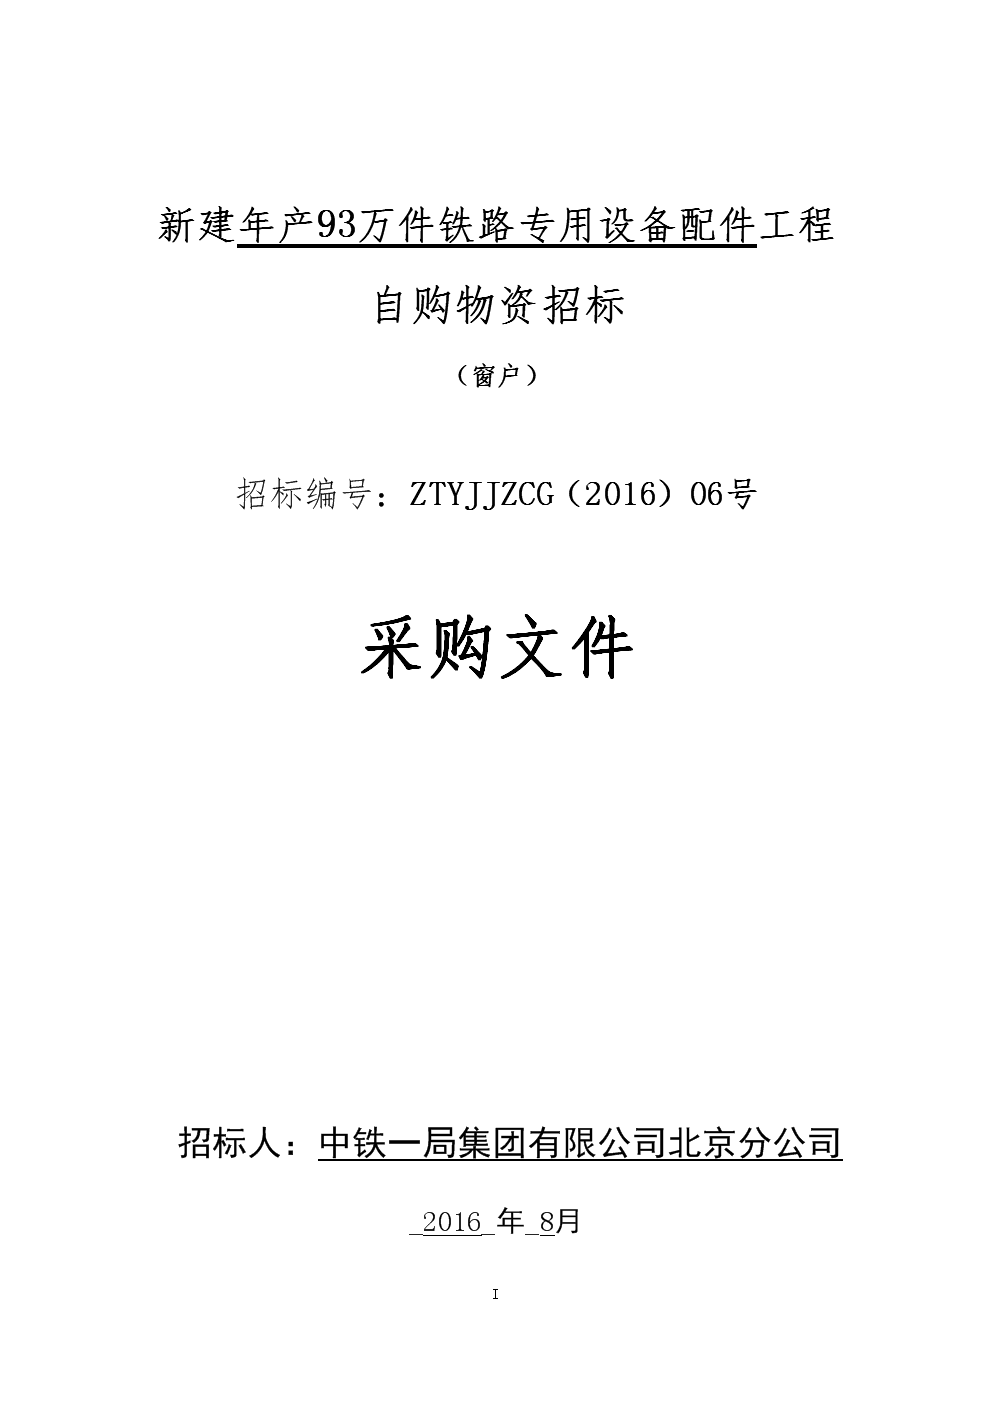 中铁bobty综合体育上海局集团有限公司TFDS集中运营平台升级招标公告